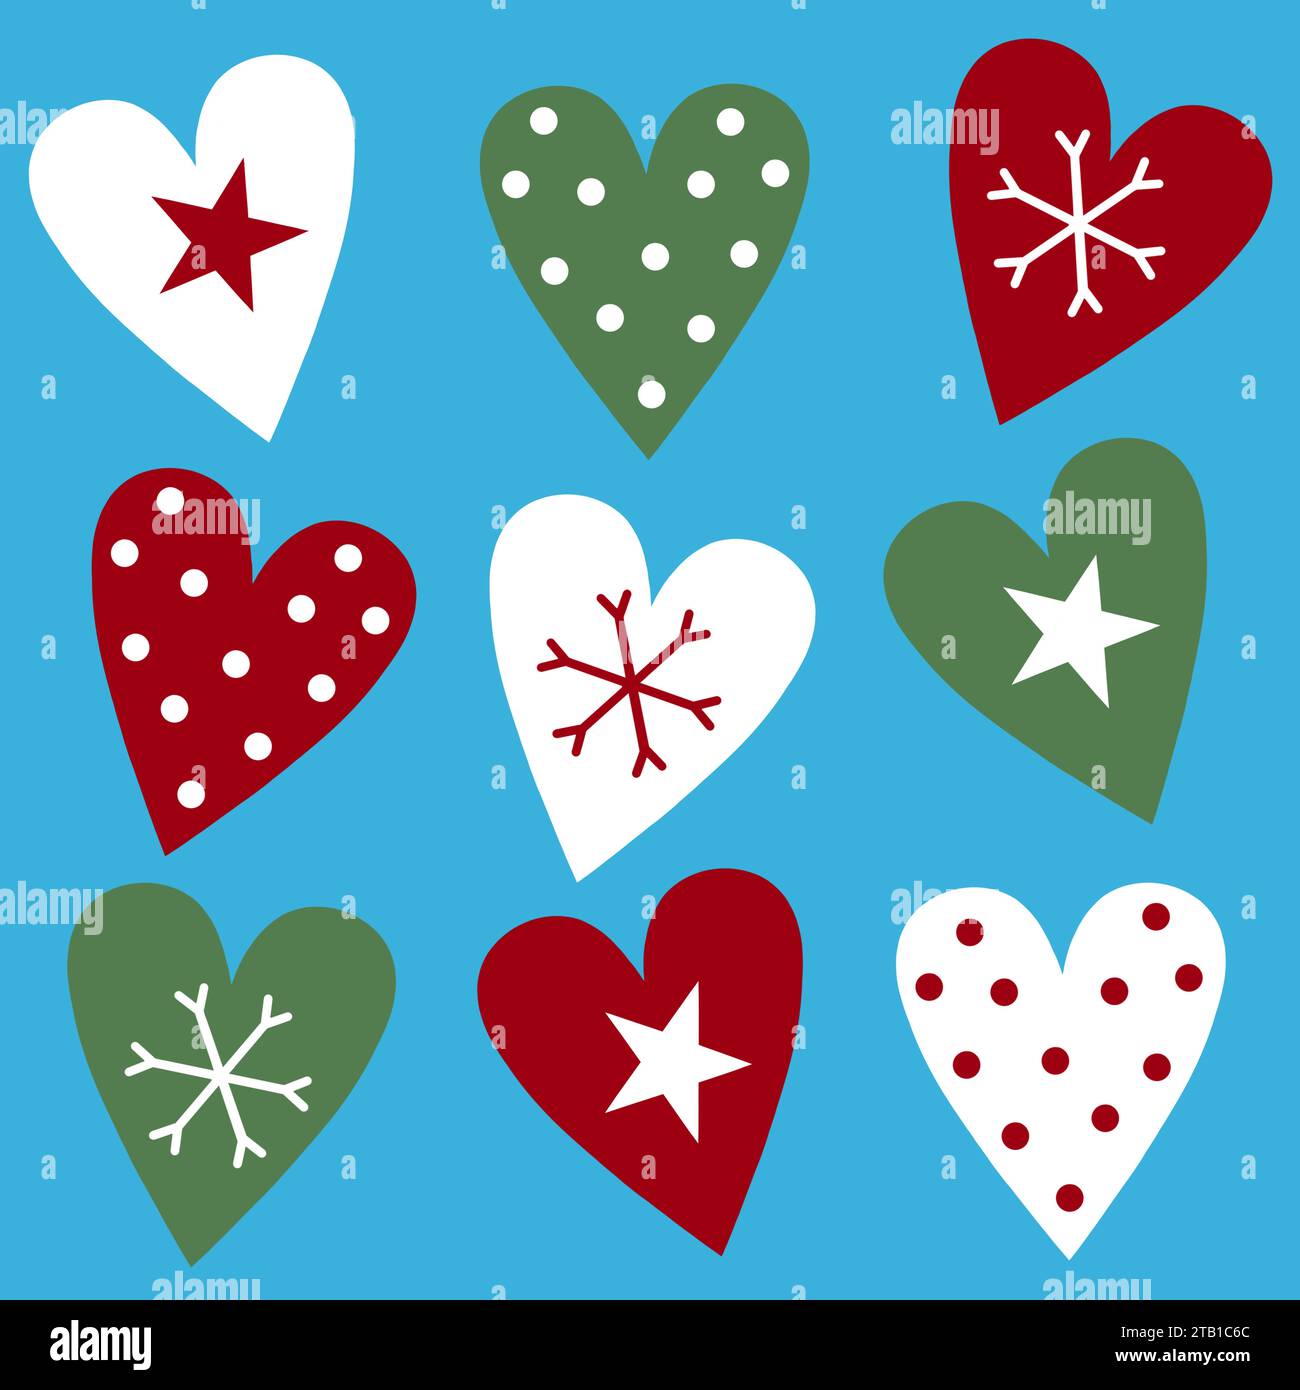 Bande dessinée amusante de Noël. Les fanions triangulaires contiennent des pois, du houx, des coeurs, des étoiles et des motifs d'arbre de Noël. Motif festif coloré. Banque D'Images